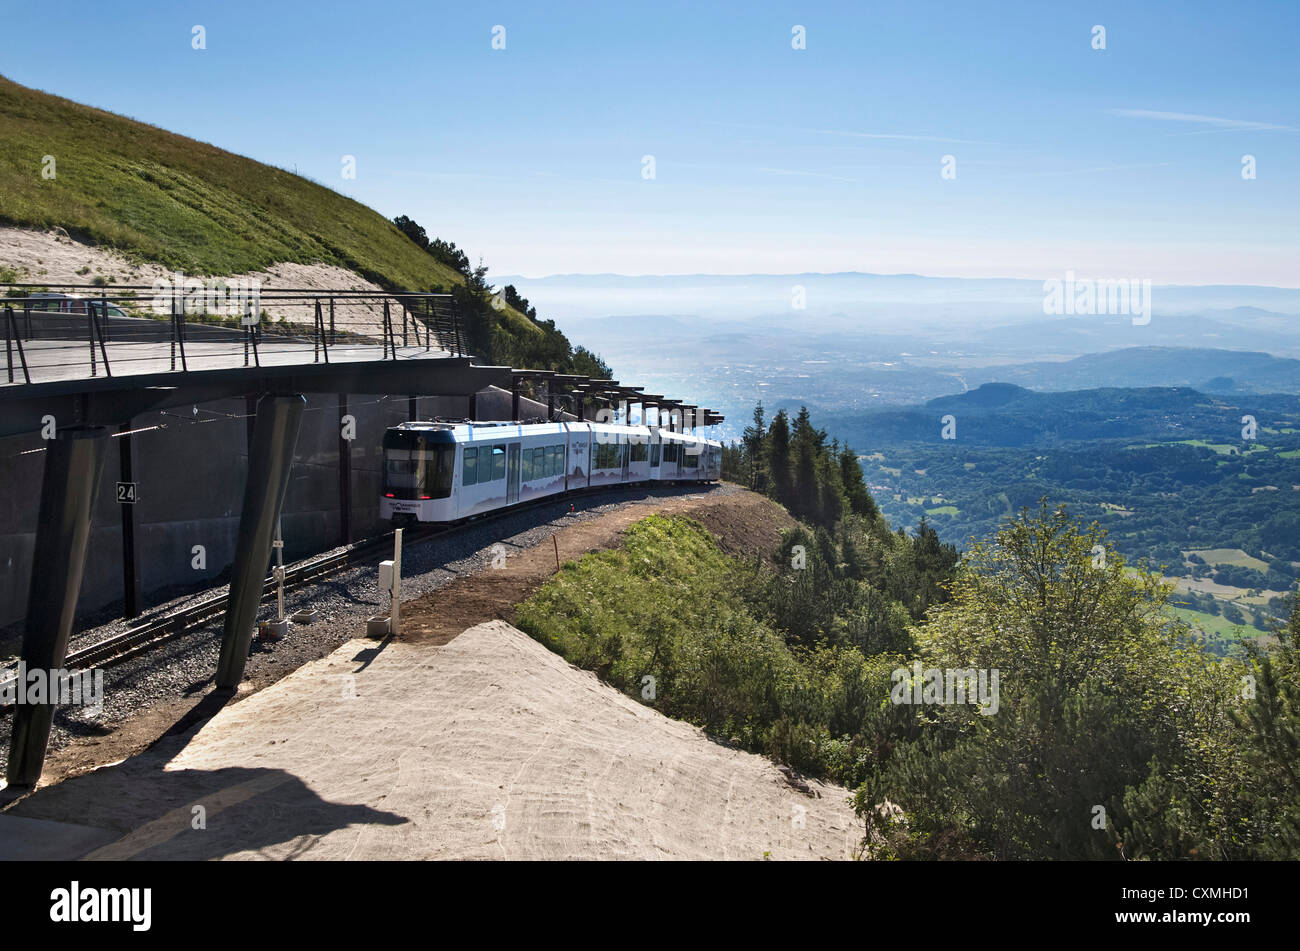 Treno turistico andando alla sommità del Puy de Dome vulcano nel parco regionale dei vulcani di Auvergne, Francia Foto Stock